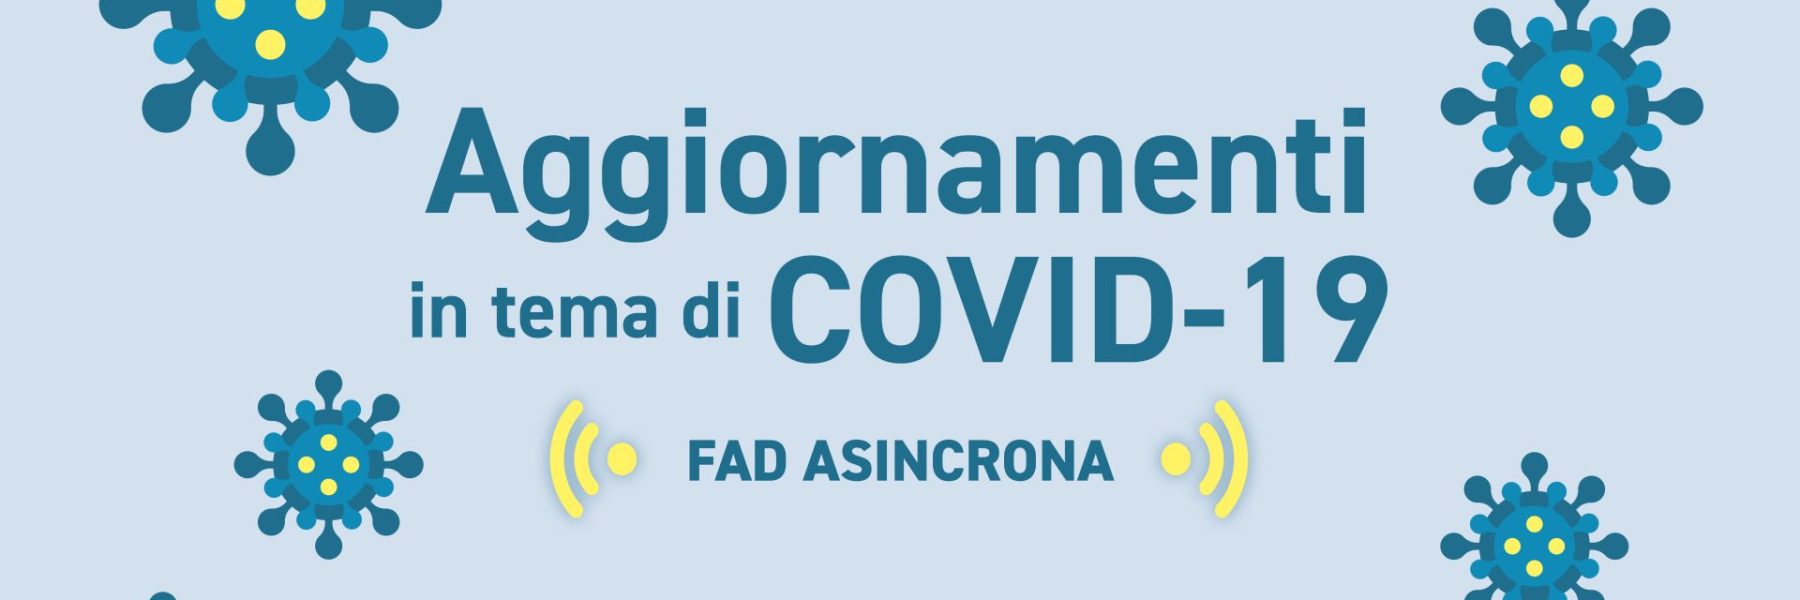 FAD ECM GRATUITA Aggiornamenti-Covid19-FAD-asincrona